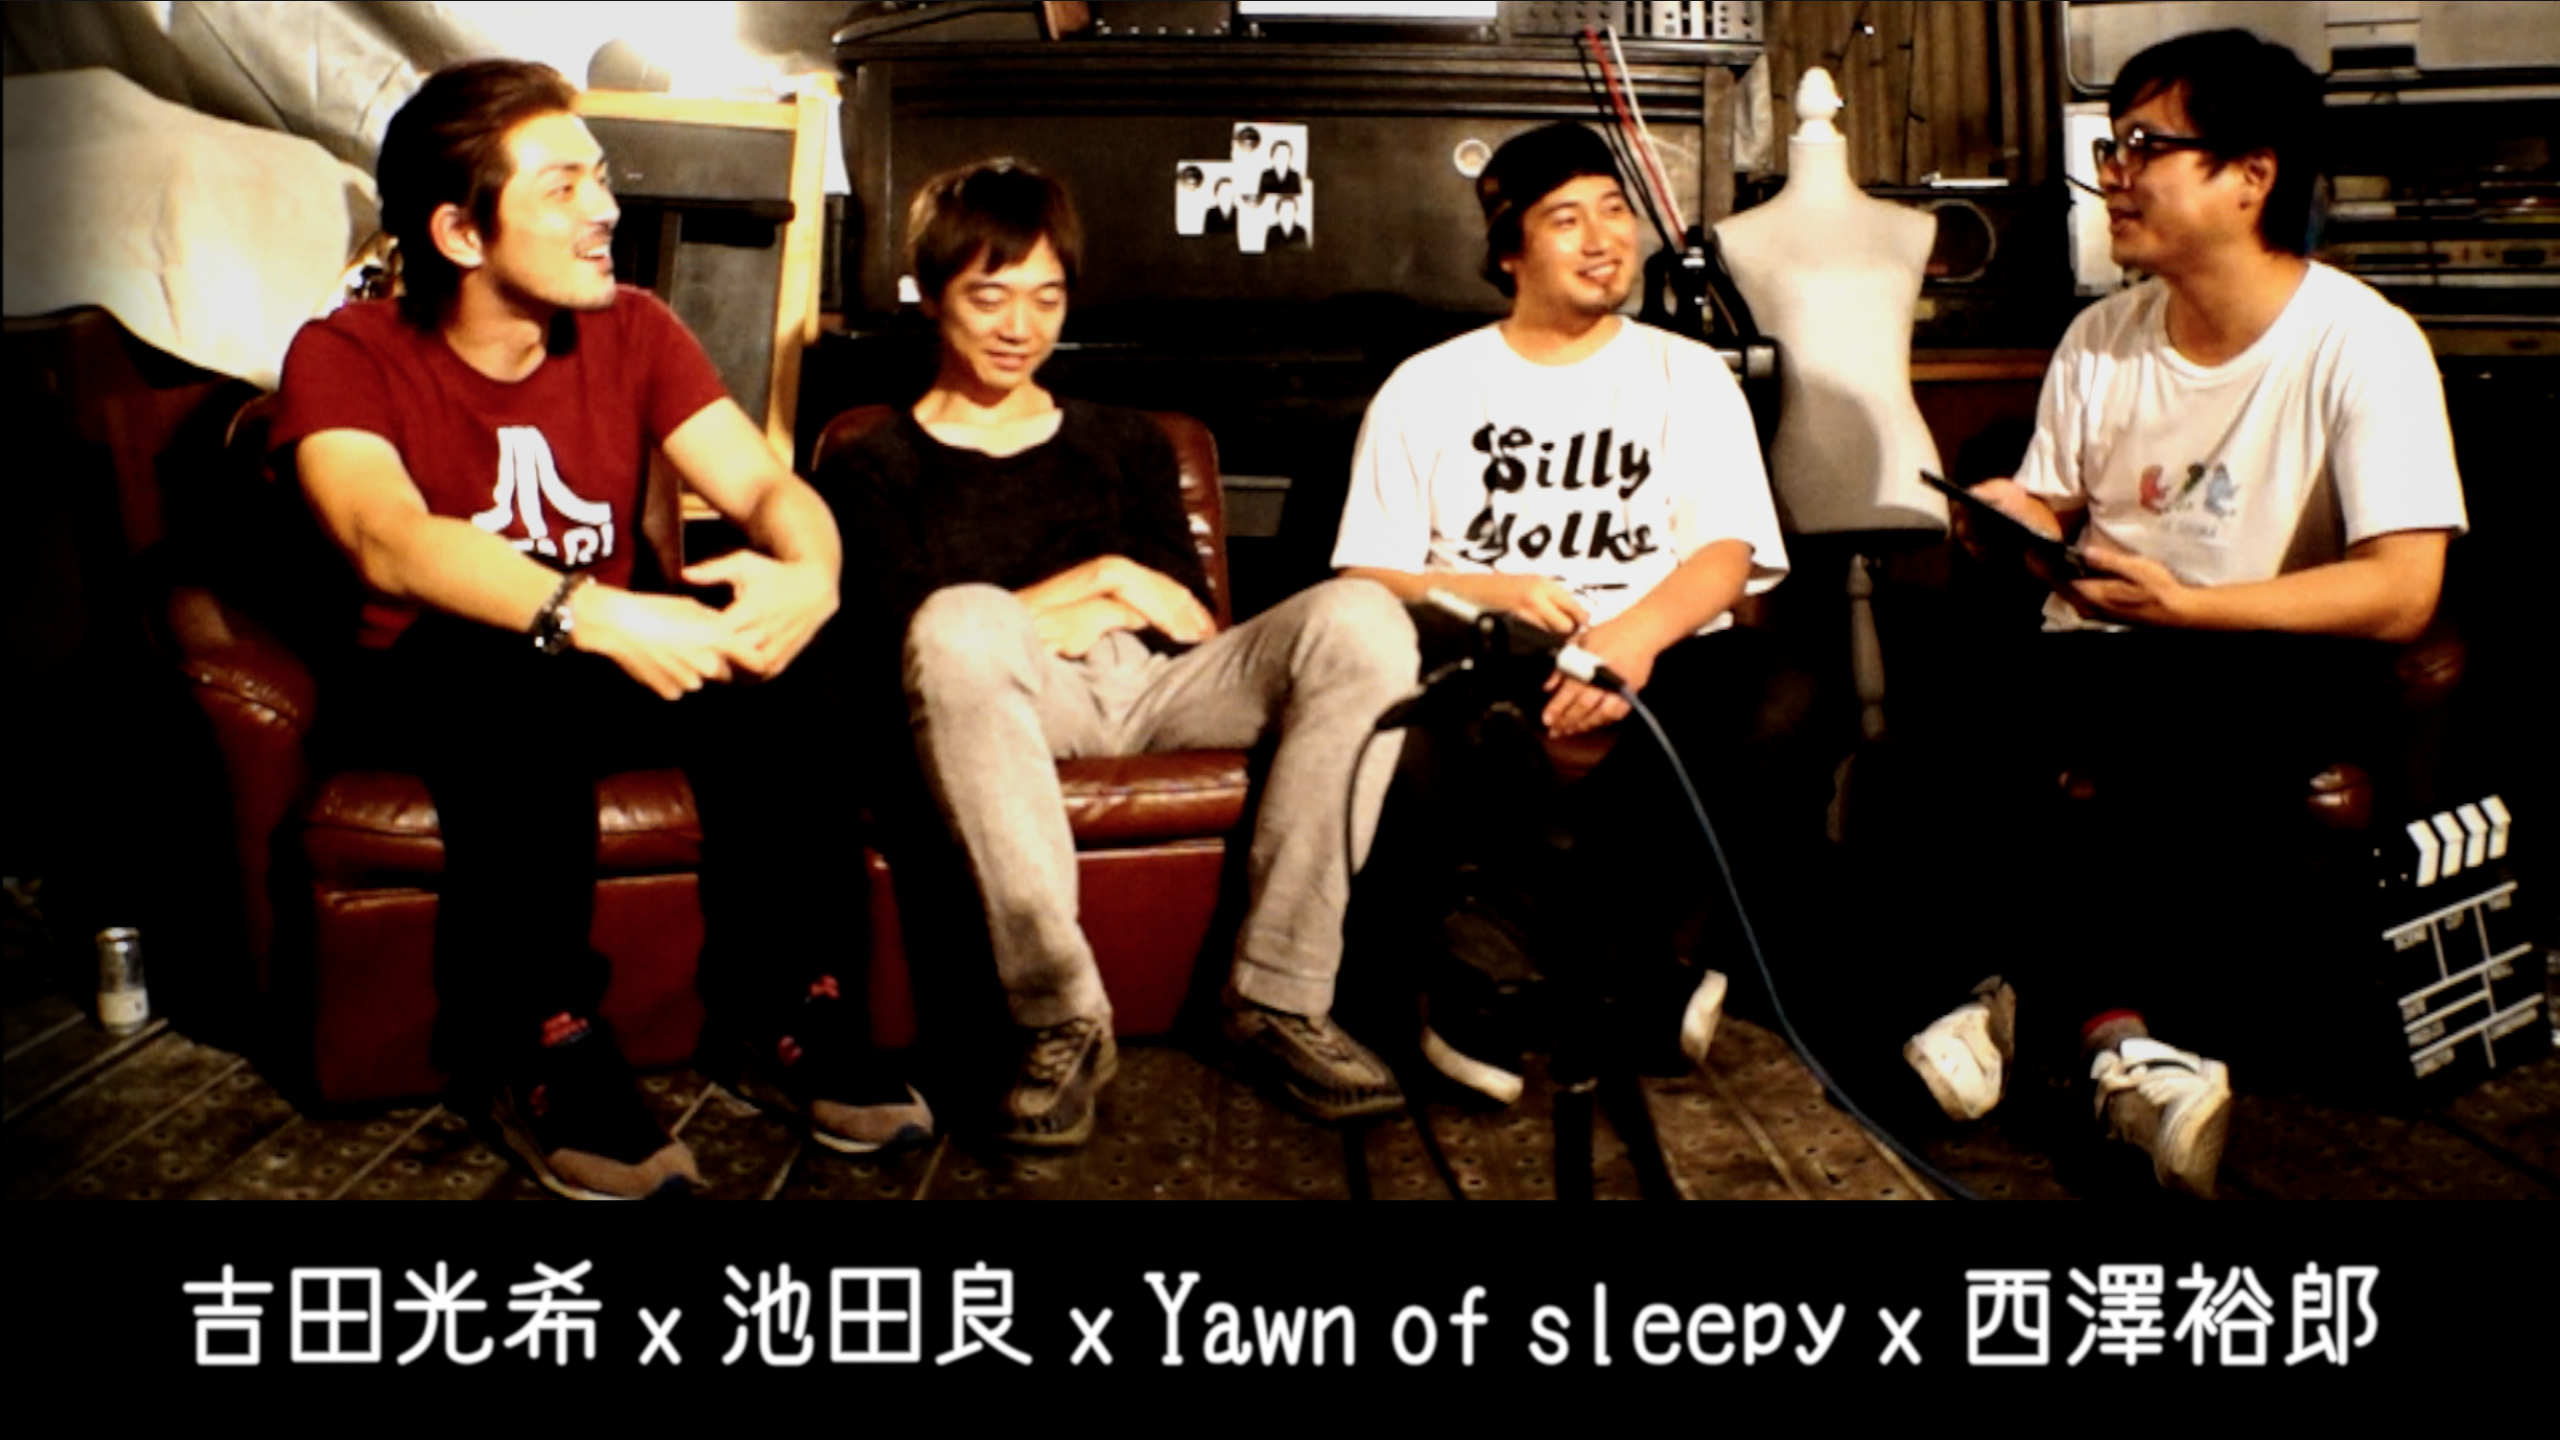 吉田光希 × 池田良 × Yawn of sleepy × 西澤裕郎